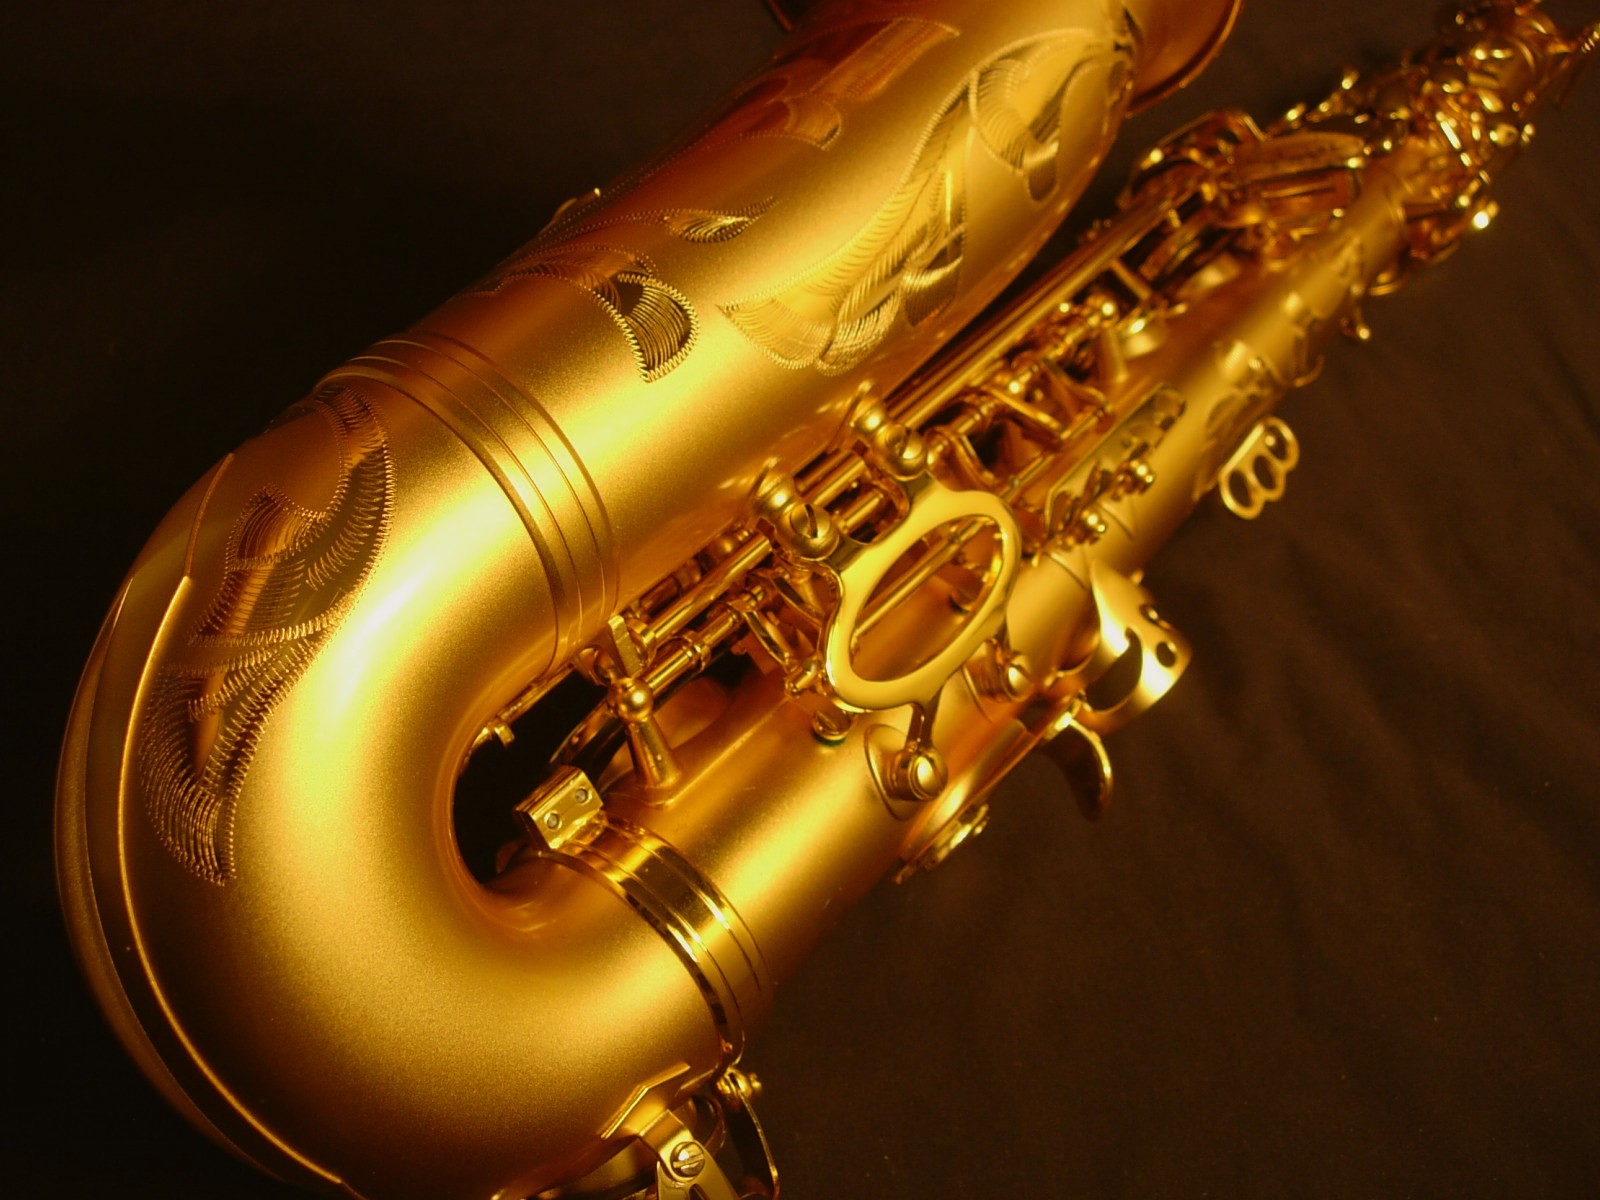 hd saxophone wallpaper,brass instrument,musical instrument,wind instrument,music,baritone saxophone